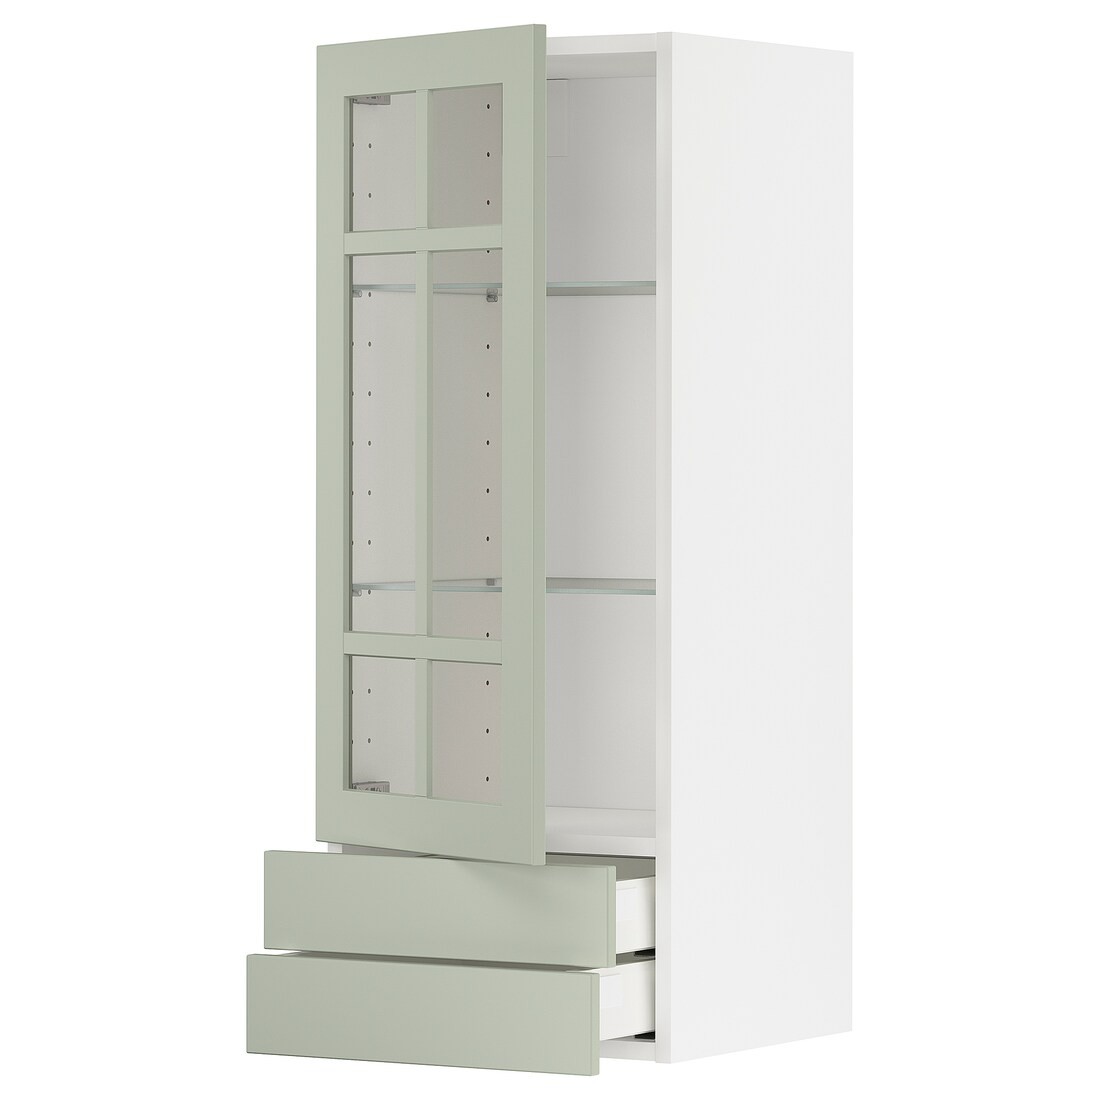 METOD МЕТОД / MAXIMERA МАКСИМЕРА Навесной шкаф / 1 стеклянная дверь / 2 ящика, белый / Stensund светло-зеленый, 40x100 см